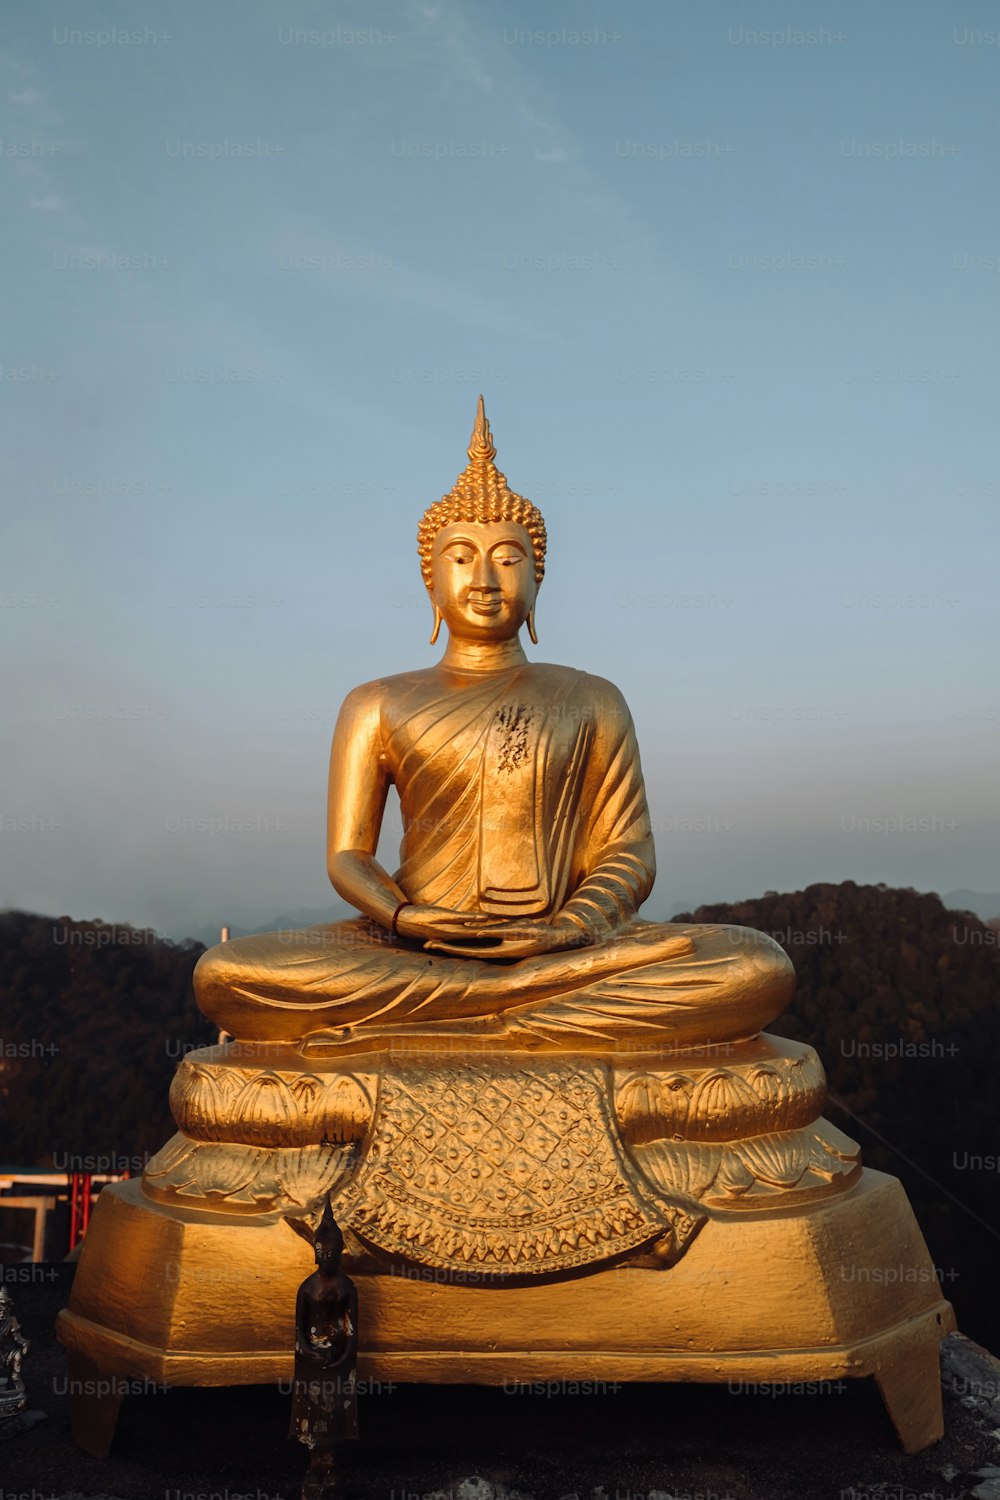 Una statua dorata del Buddha seduta sulla cima di una roccia